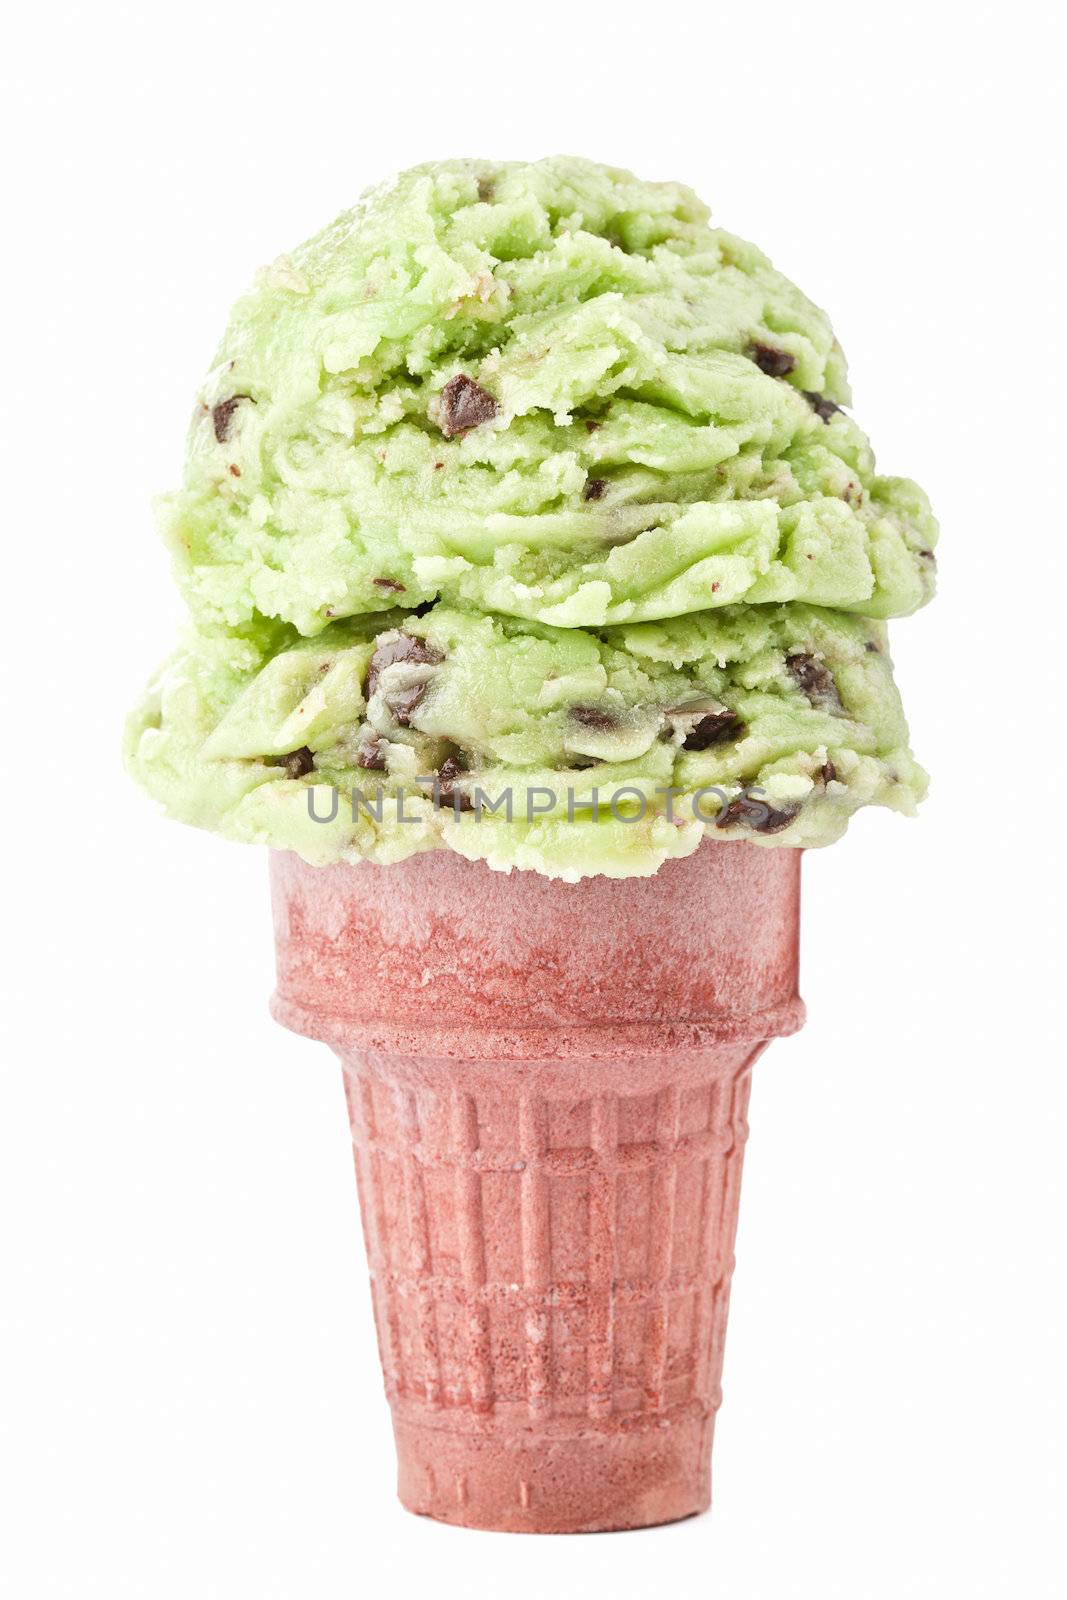 Green Tea Ice Cream in a Cone